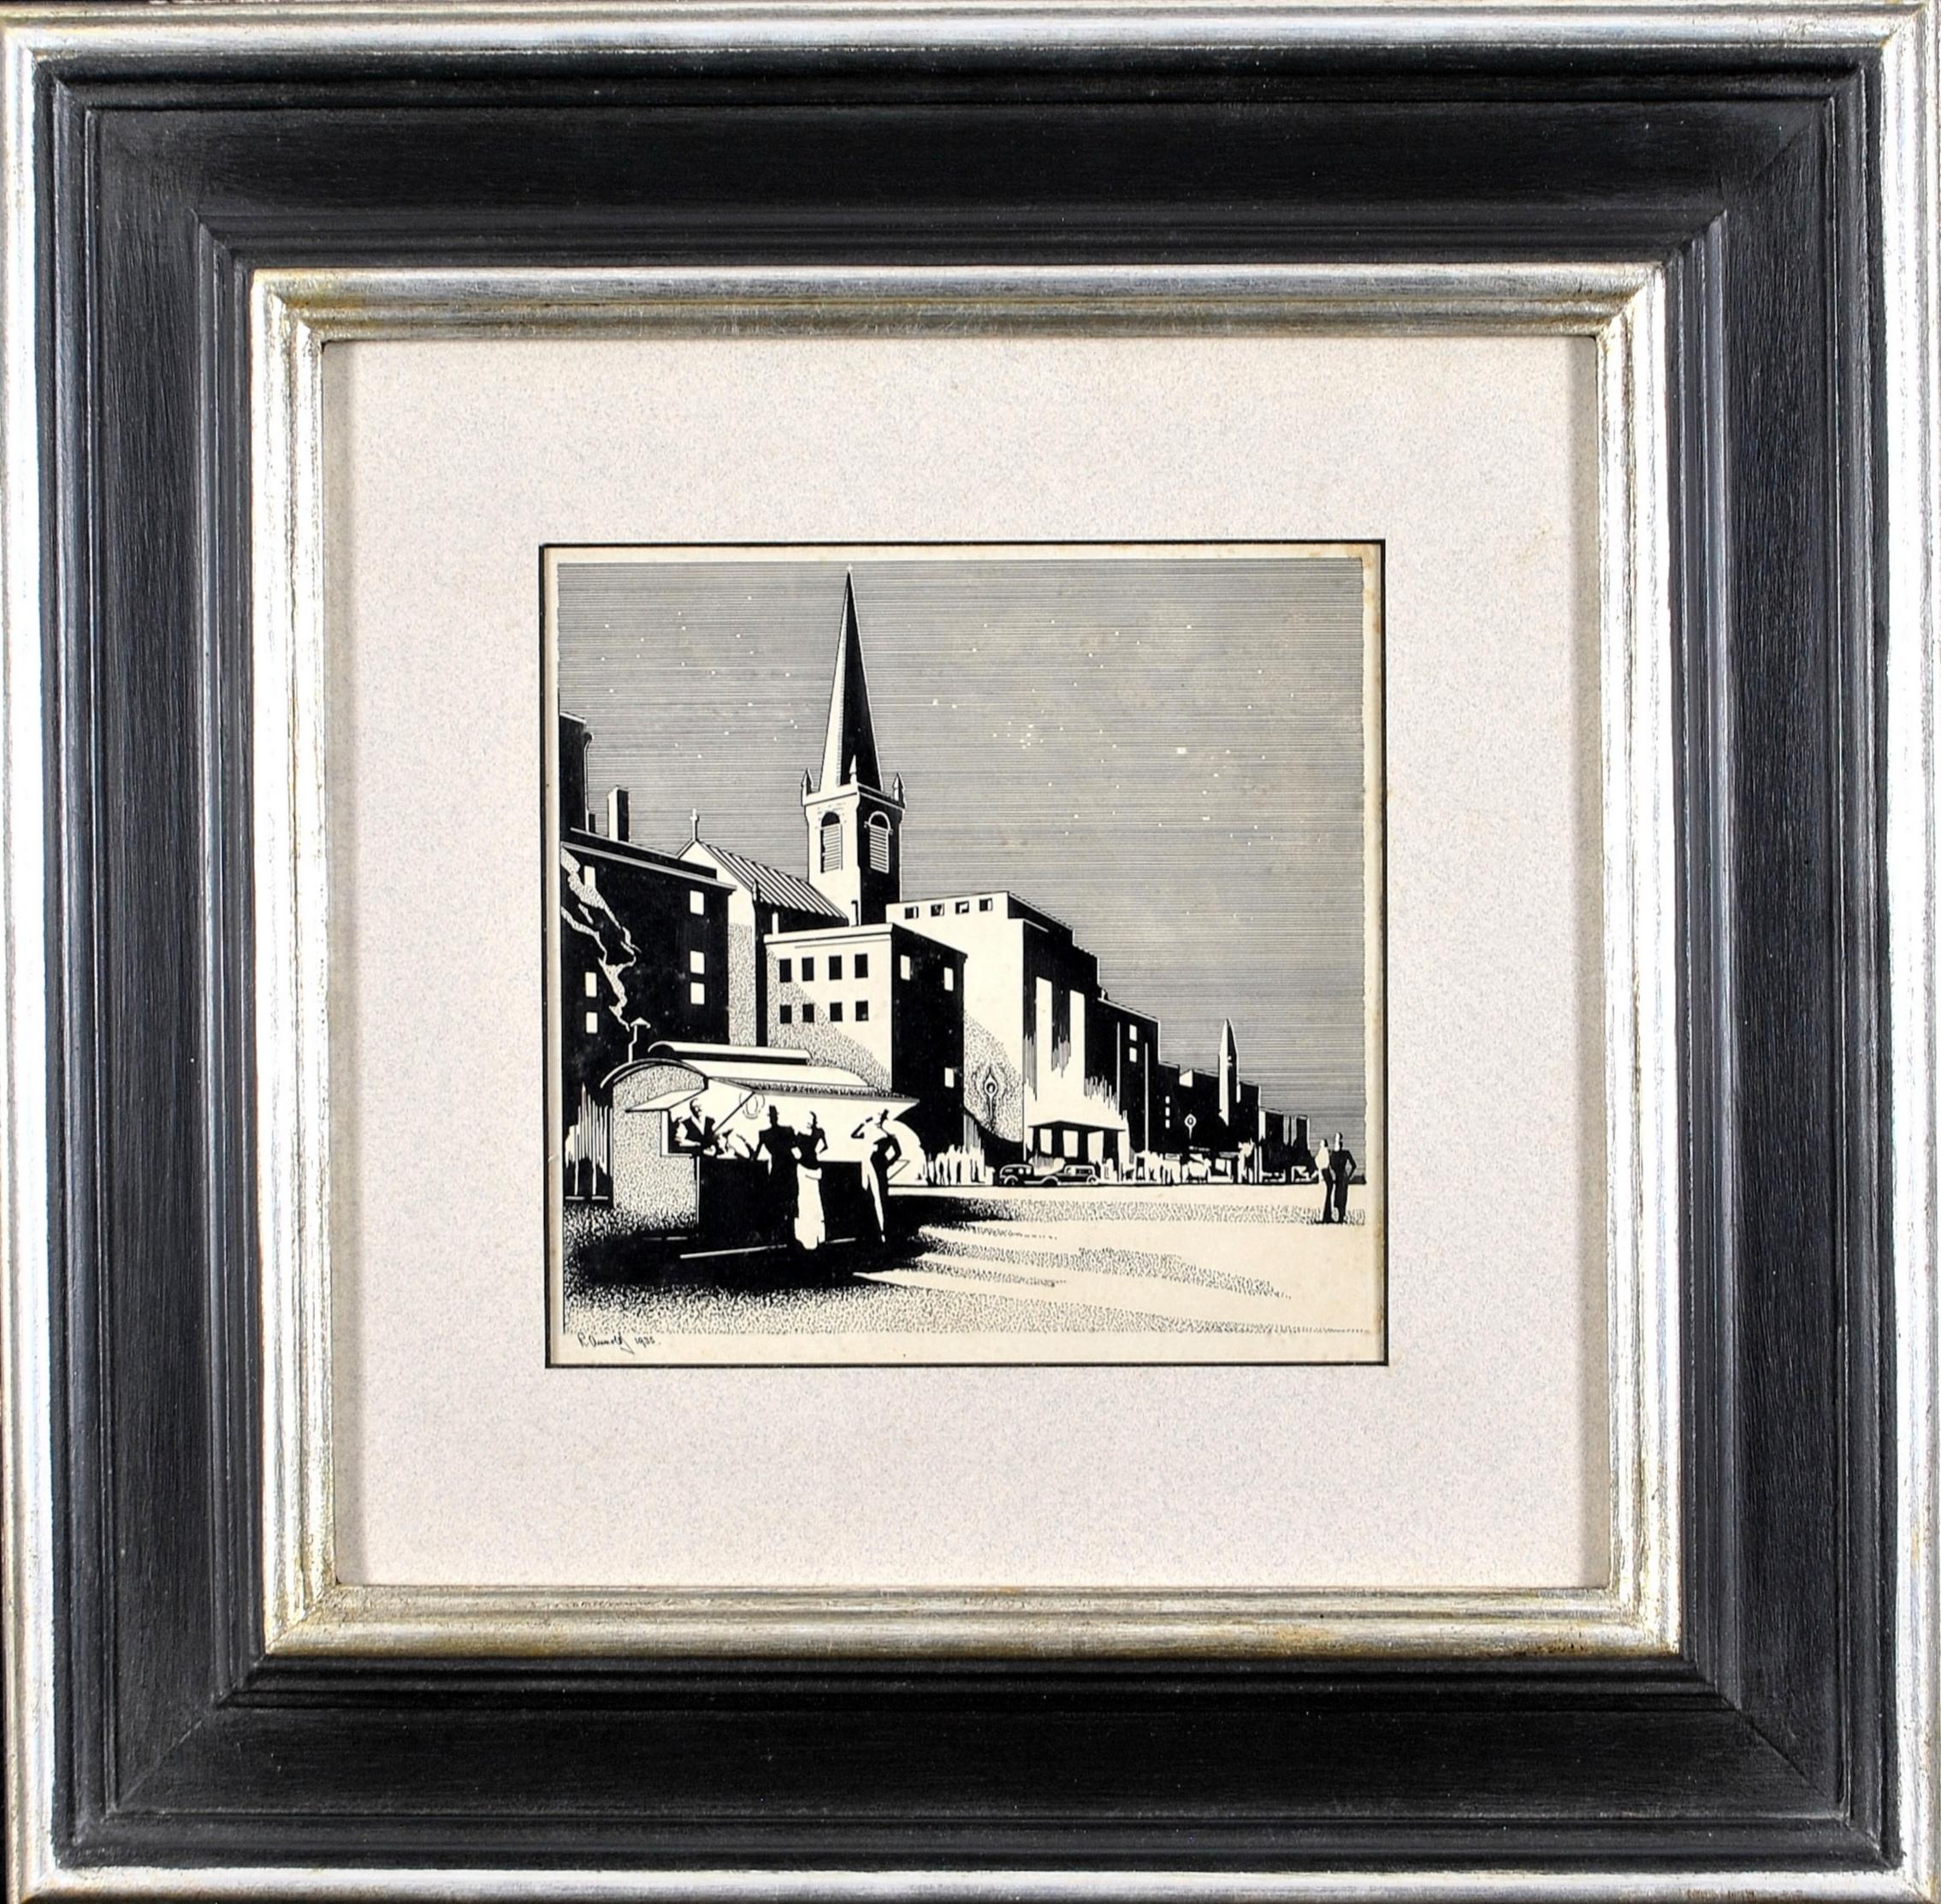 Townscape - Figuren in einer Art-déco-Stadt des frühen 20. Jahrhunderts, Holzschnitt-Druckbild